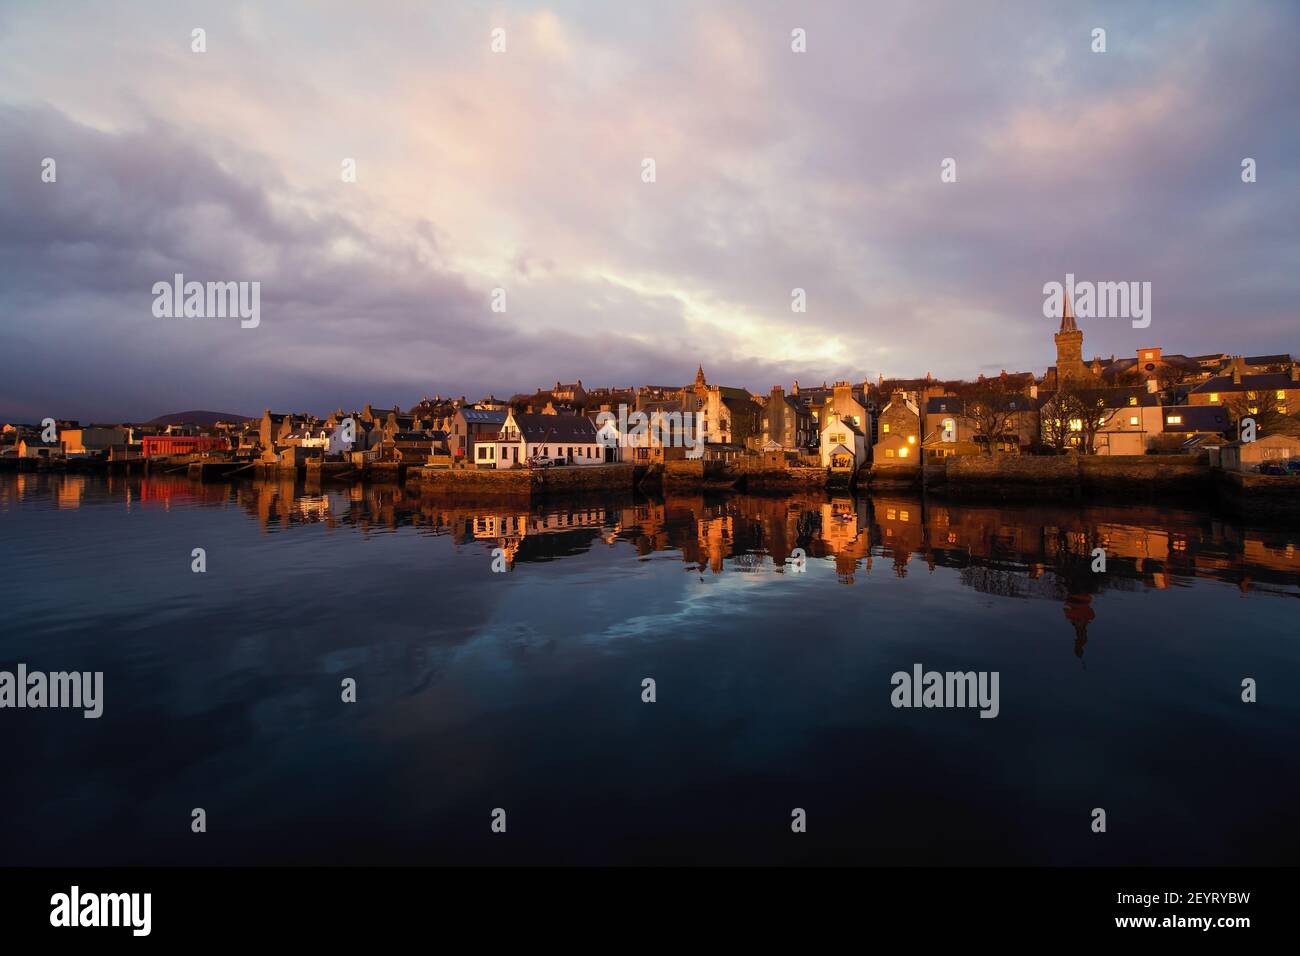 La luz de la mañana dorada golpea las casas antiguas frente al mar en la isla de Orkney En el norte de Escocia con agua azul oscuro y cielo brillante Foto de stock